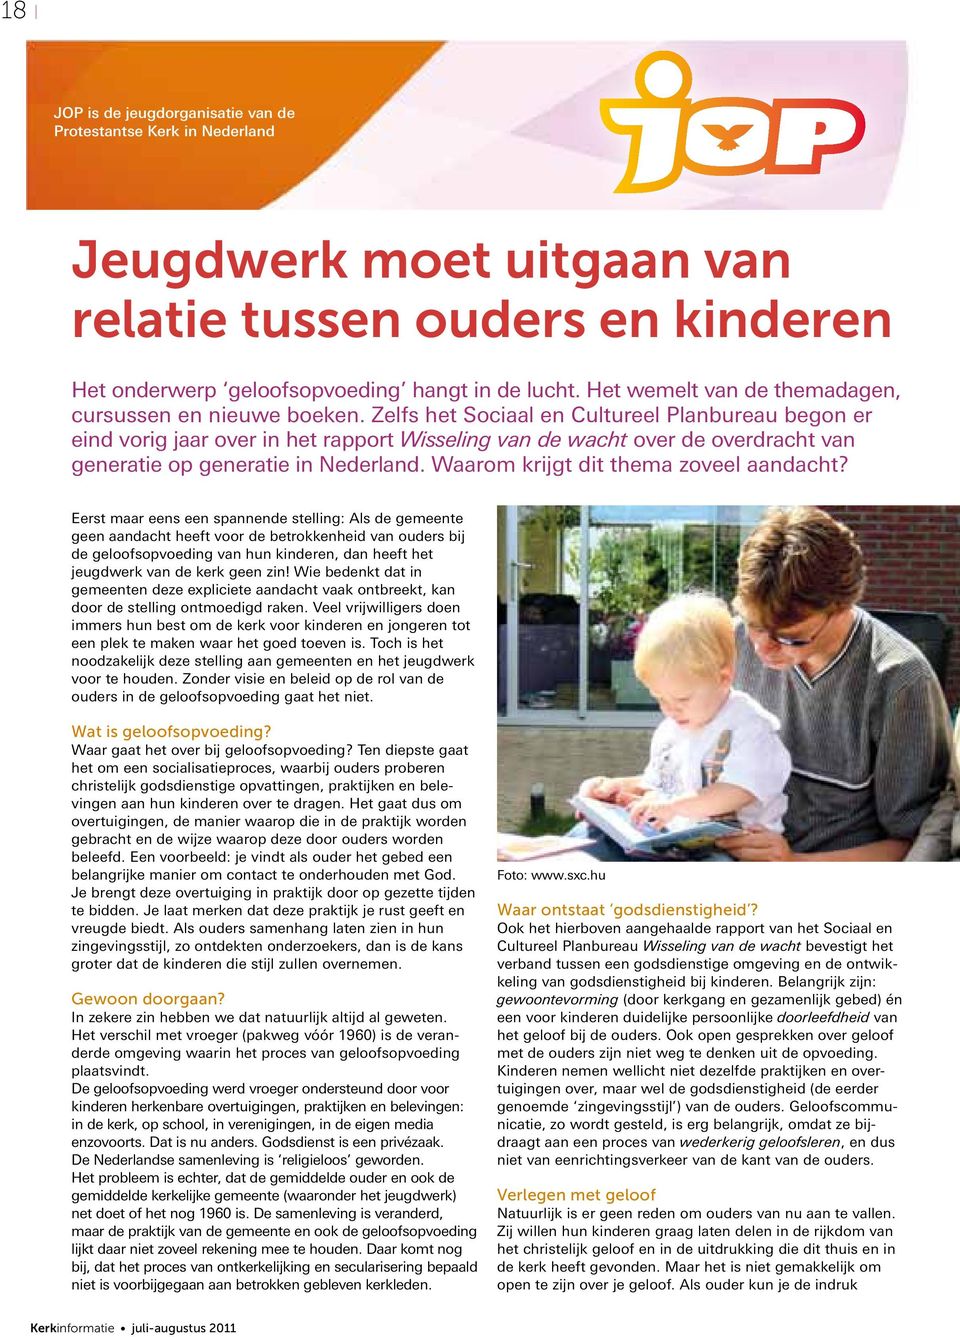 Zelfs het Sociaal en Cultureel Planbureau begon er eind vorig jaar over in het rapport Wisseling van de wacht over de overdracht van generatie op generatie in Nederland.